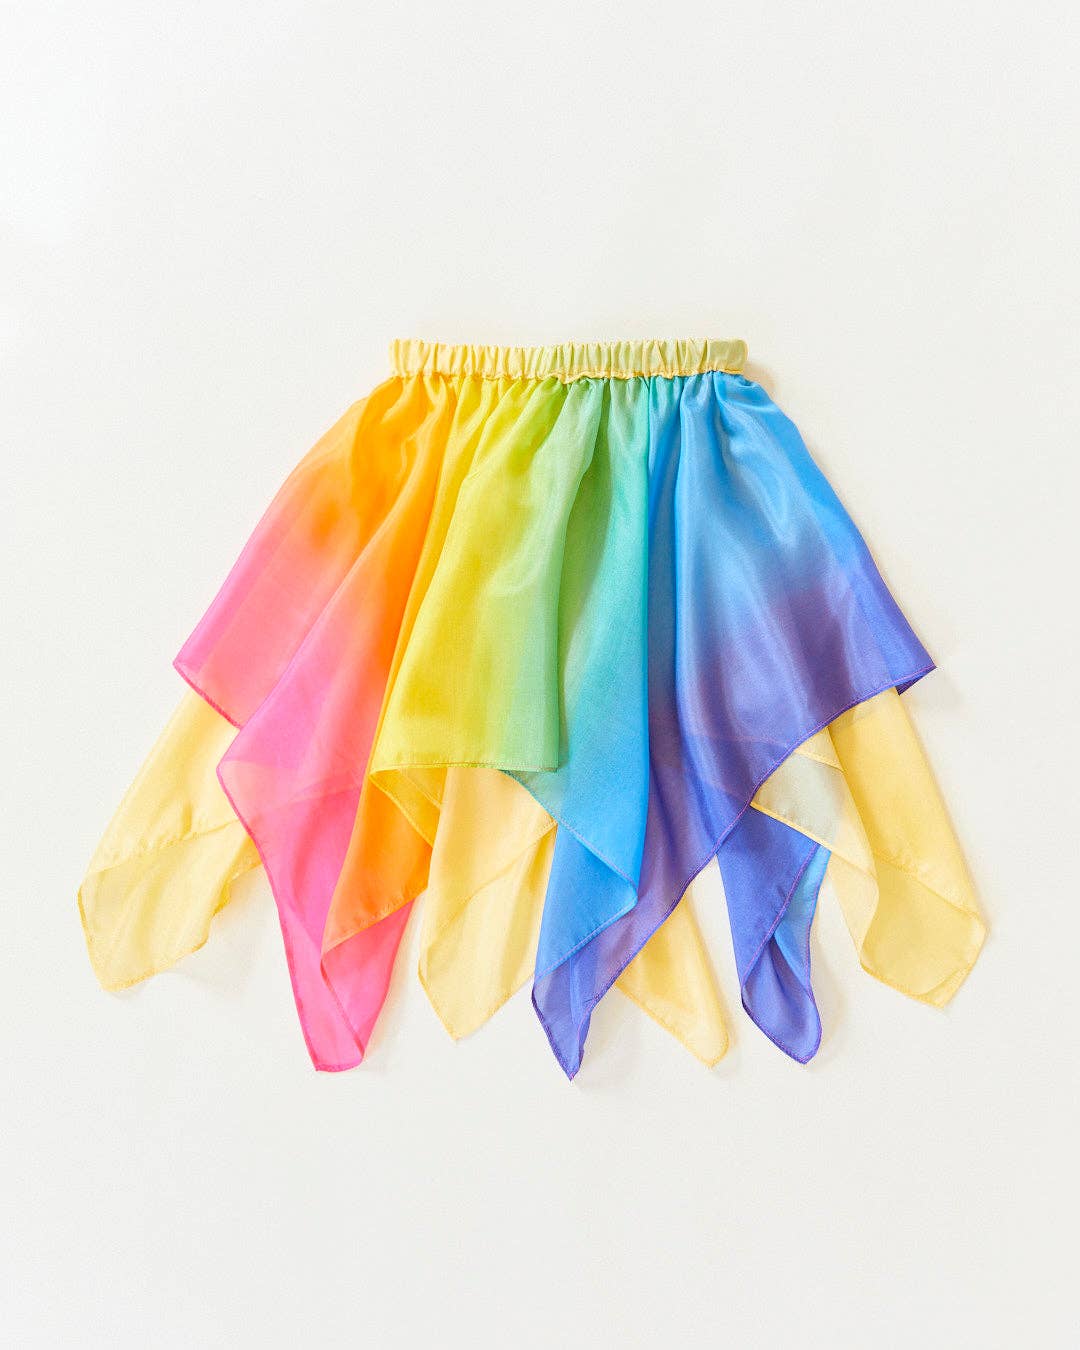 Fairy Skirt - 100% Silk Dress-Up for Pretend Play